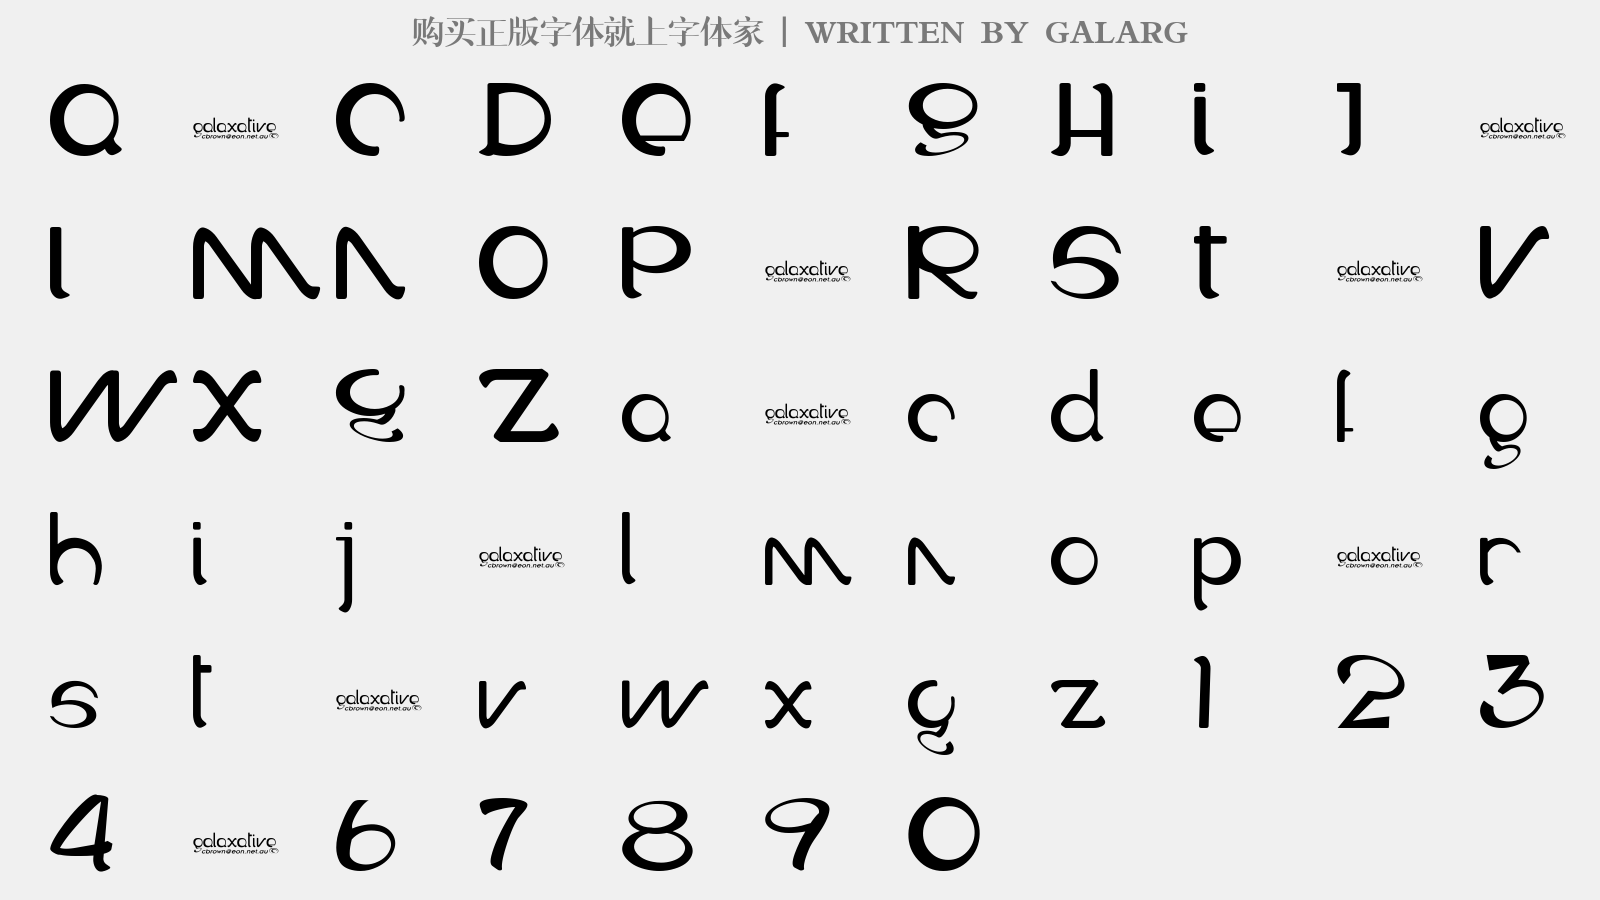 GALARG - 大写字母/小写字母/数字